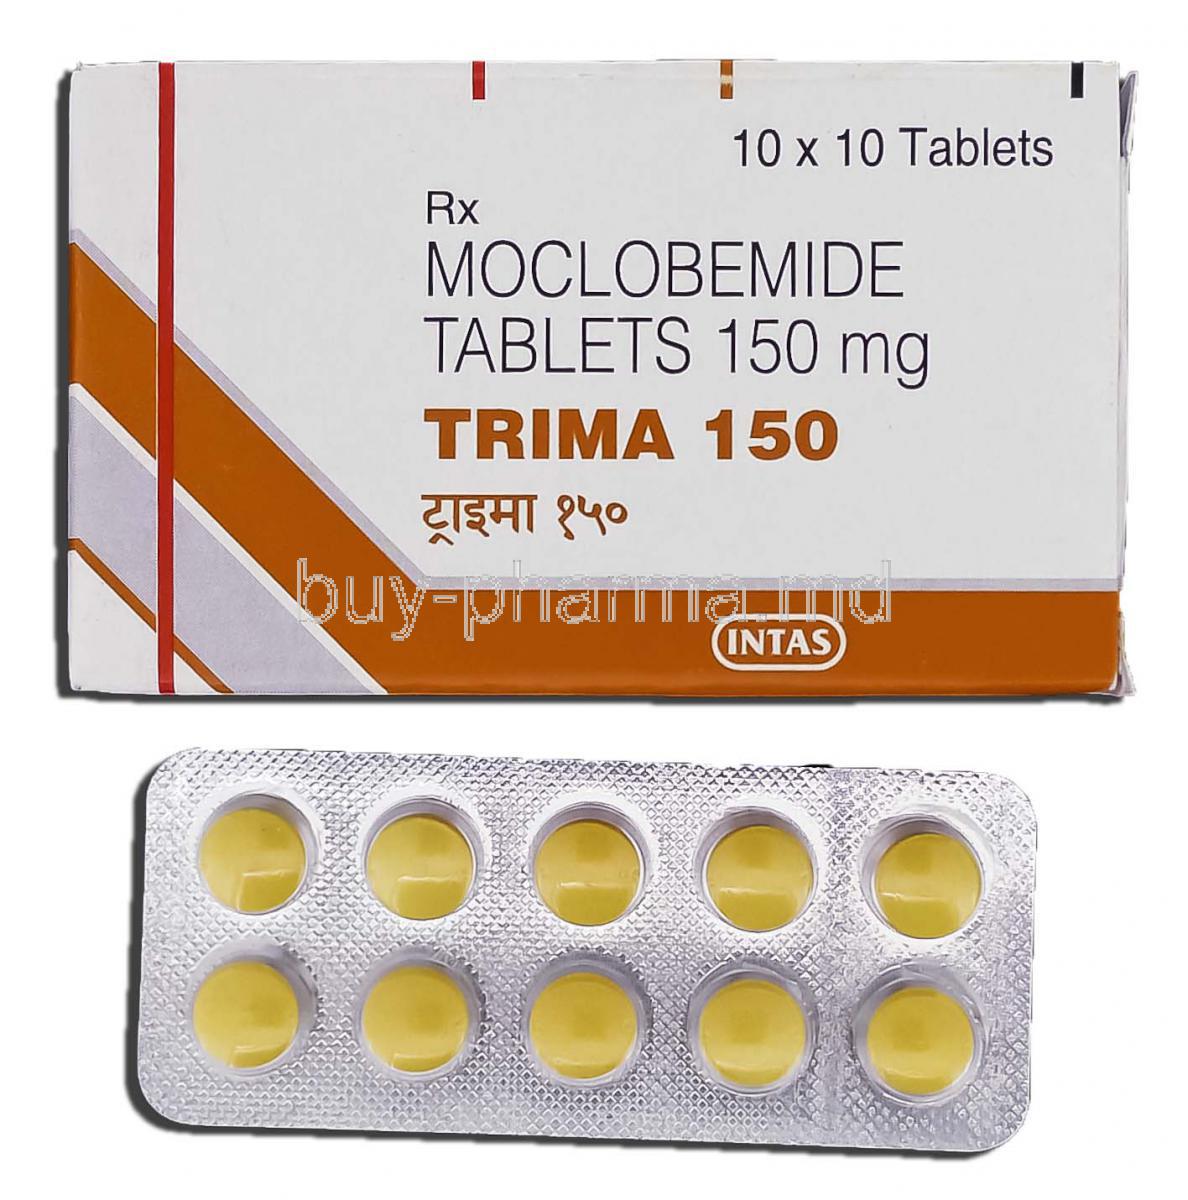 Trima 150, Generic Manerix Aurorix, Moclobemide 150mg, Tablet